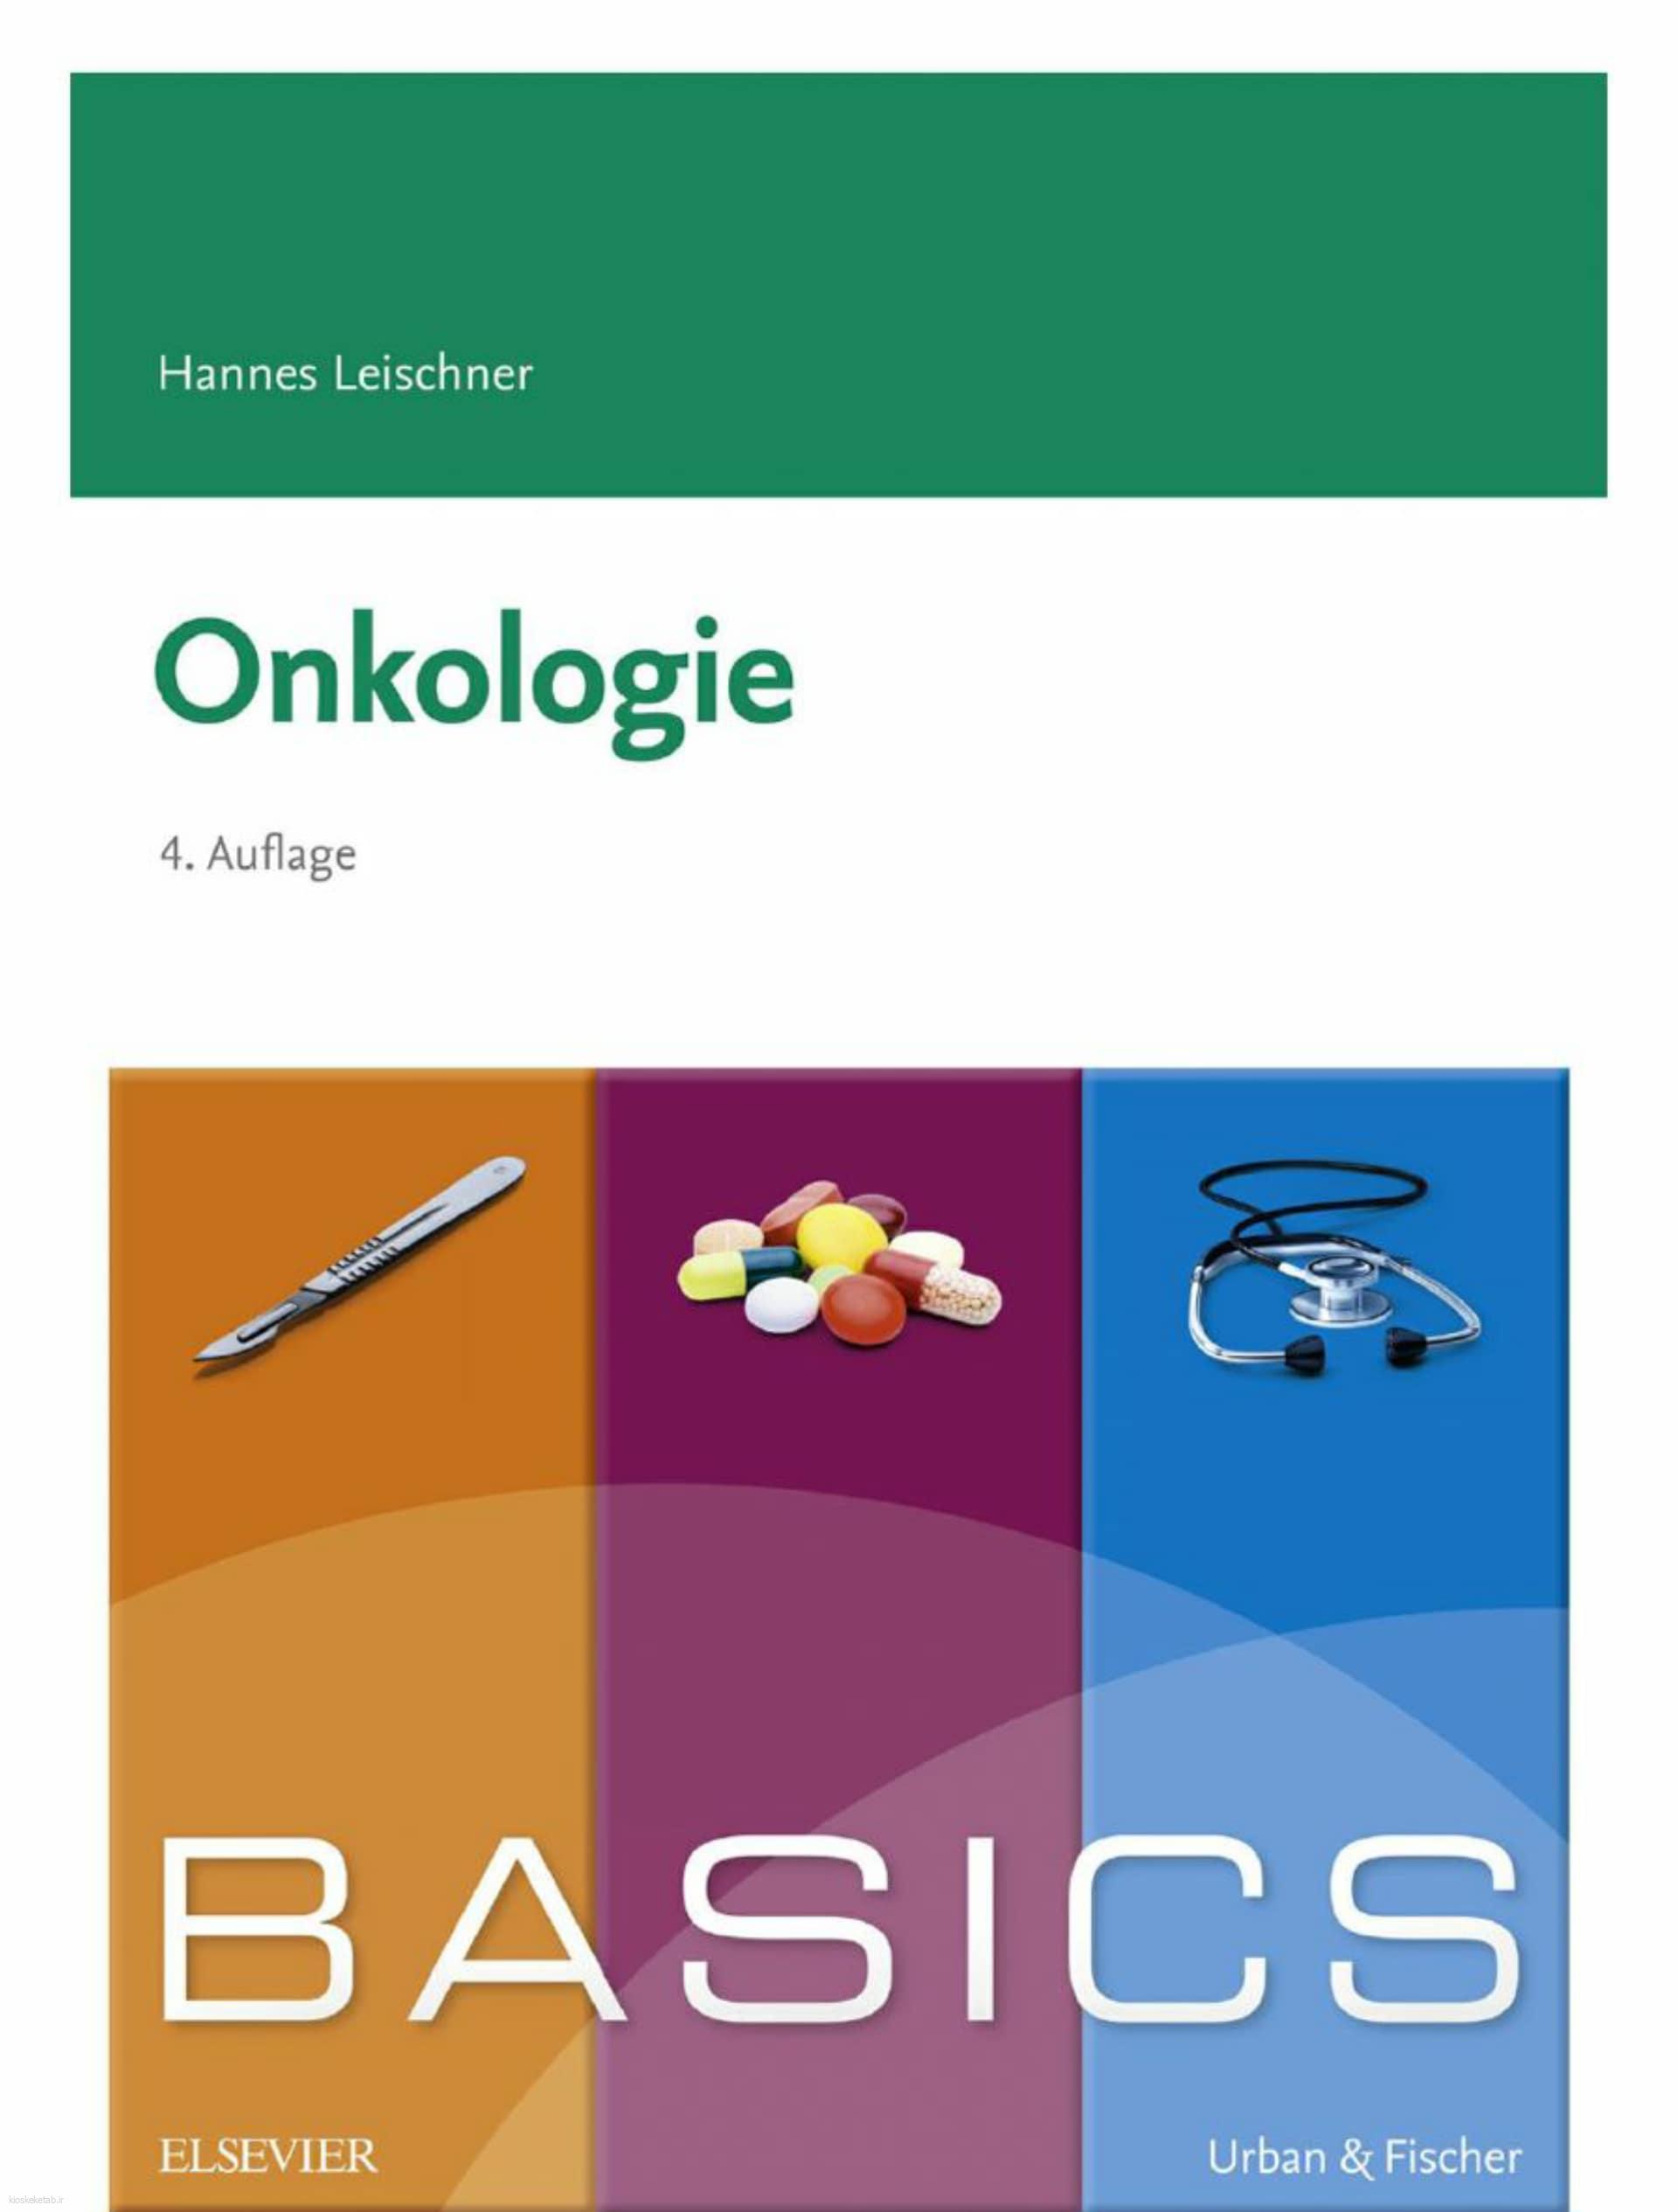 دانلود کتاب آلمانیbasics onkologie